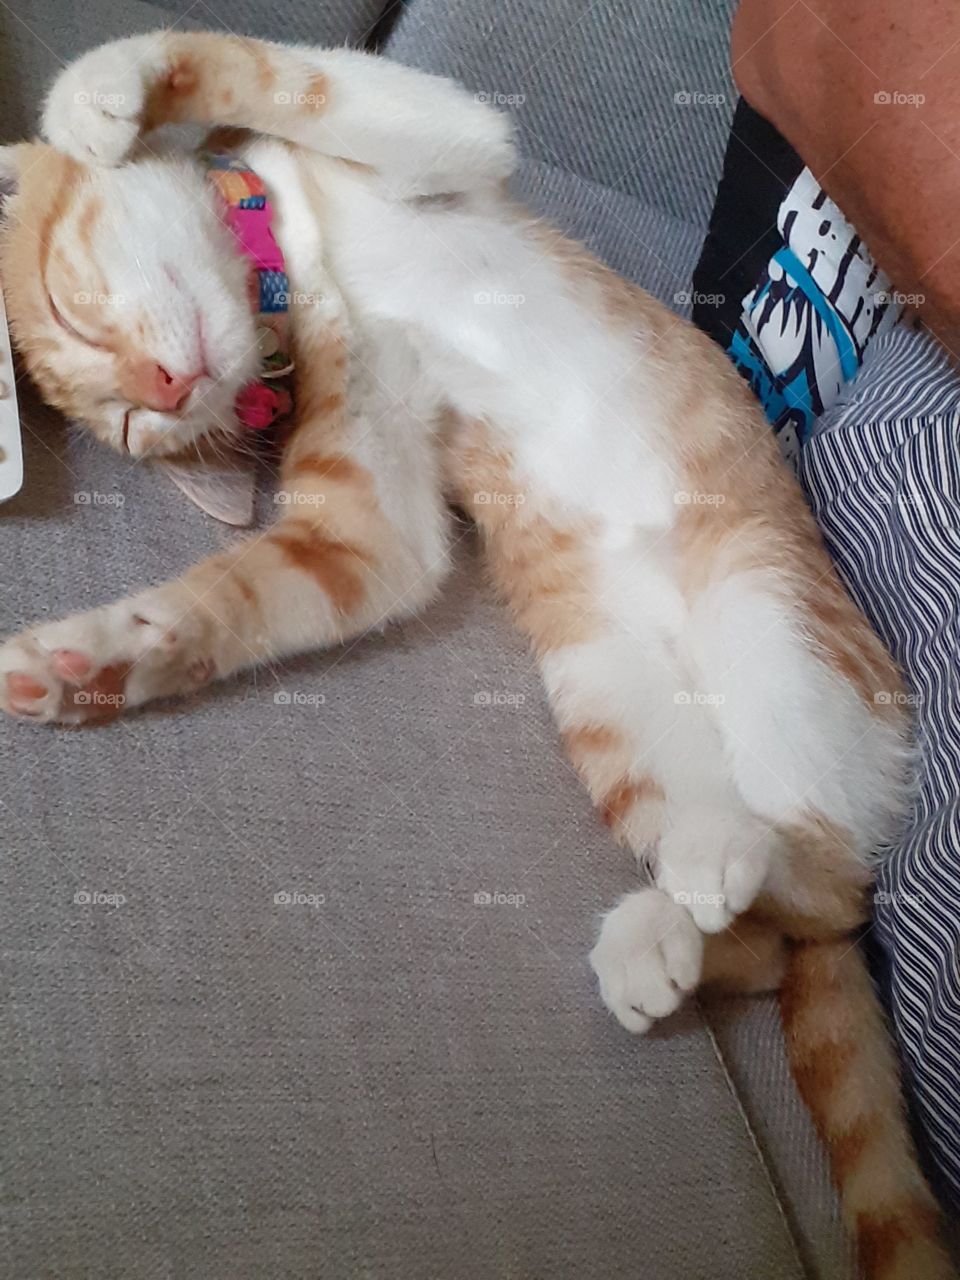 A little kittens nap